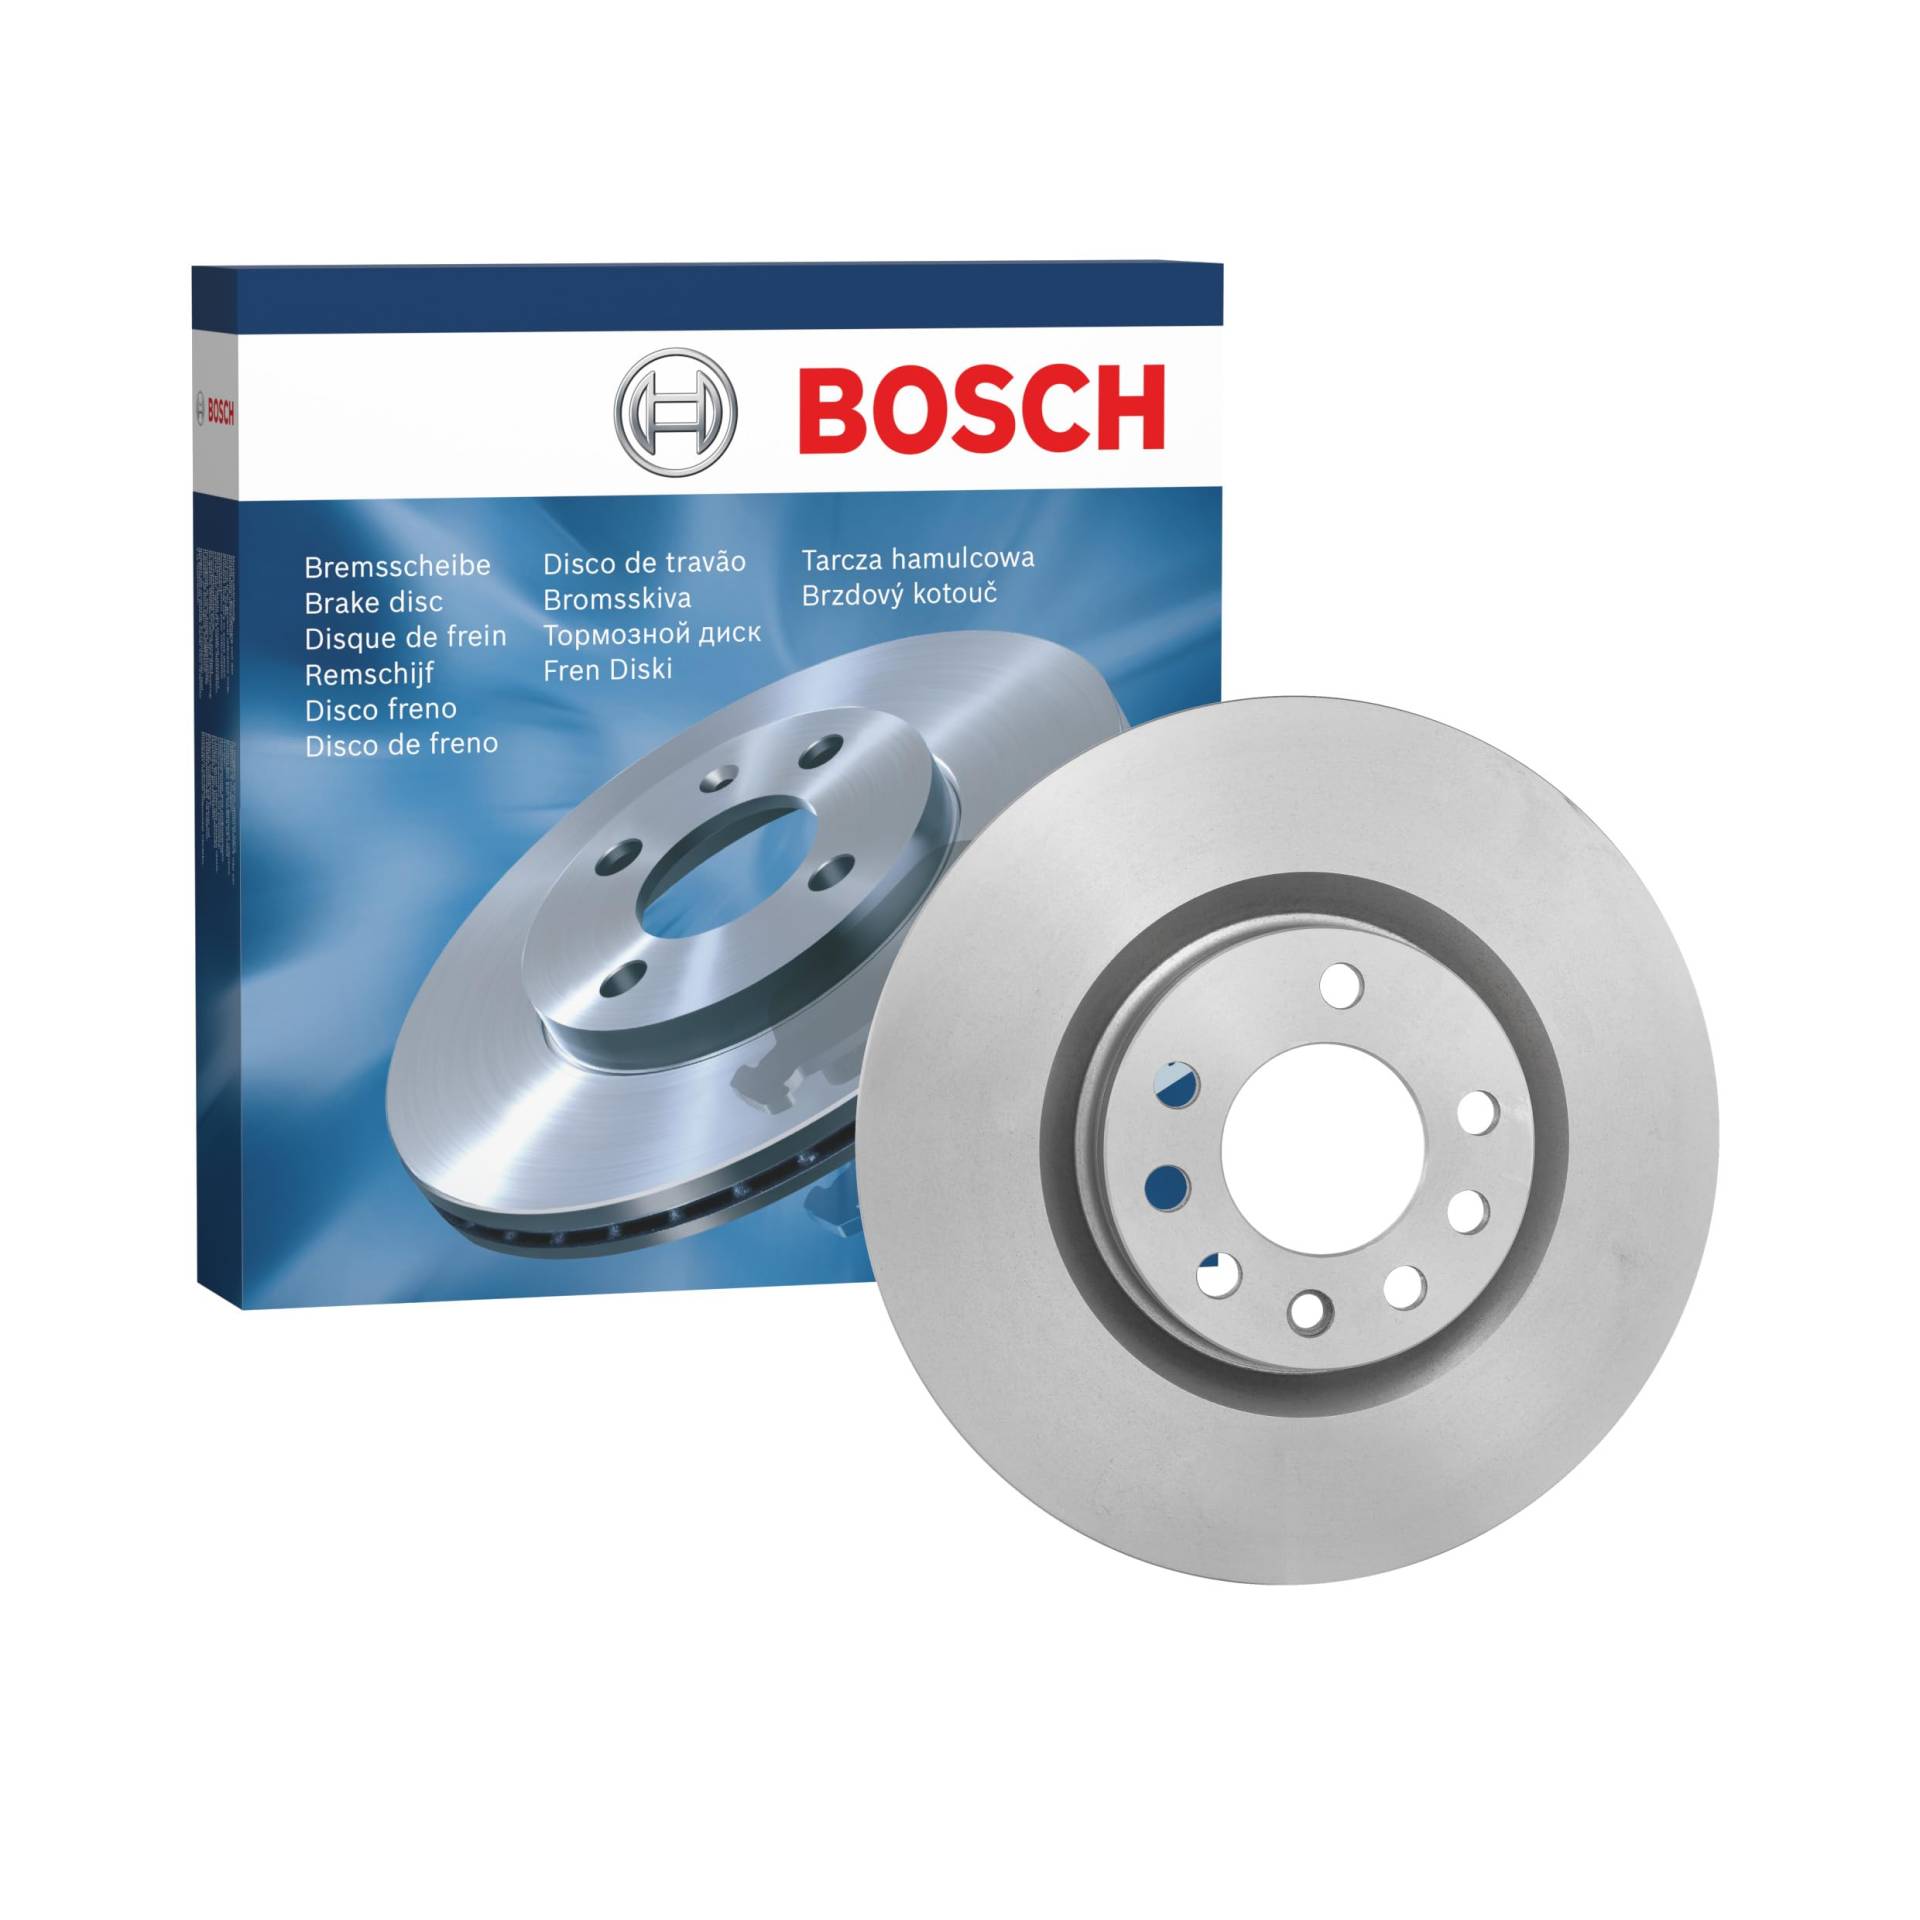 Bosch BD1179 Bremsscheiben - Vorderachse - ECE-R90 Zertifizierung - eine Bremsscheibe von Bosch Automotive